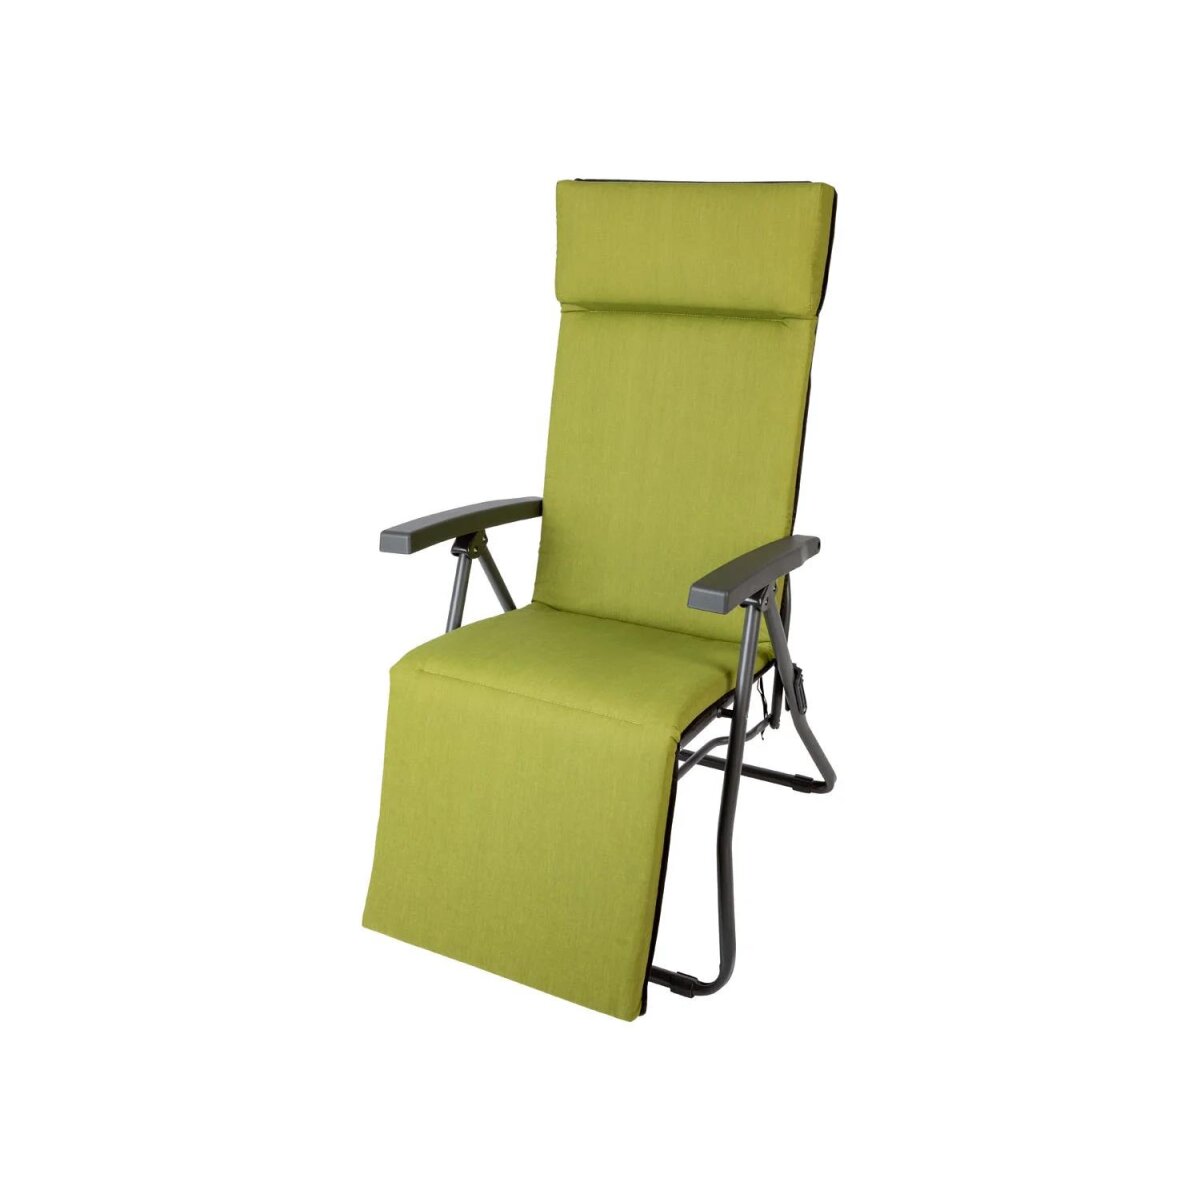 Livarno Home Relaxsessel mit Auflage, grün/anthrazit - B-Ware sehr gut,  44,99 €